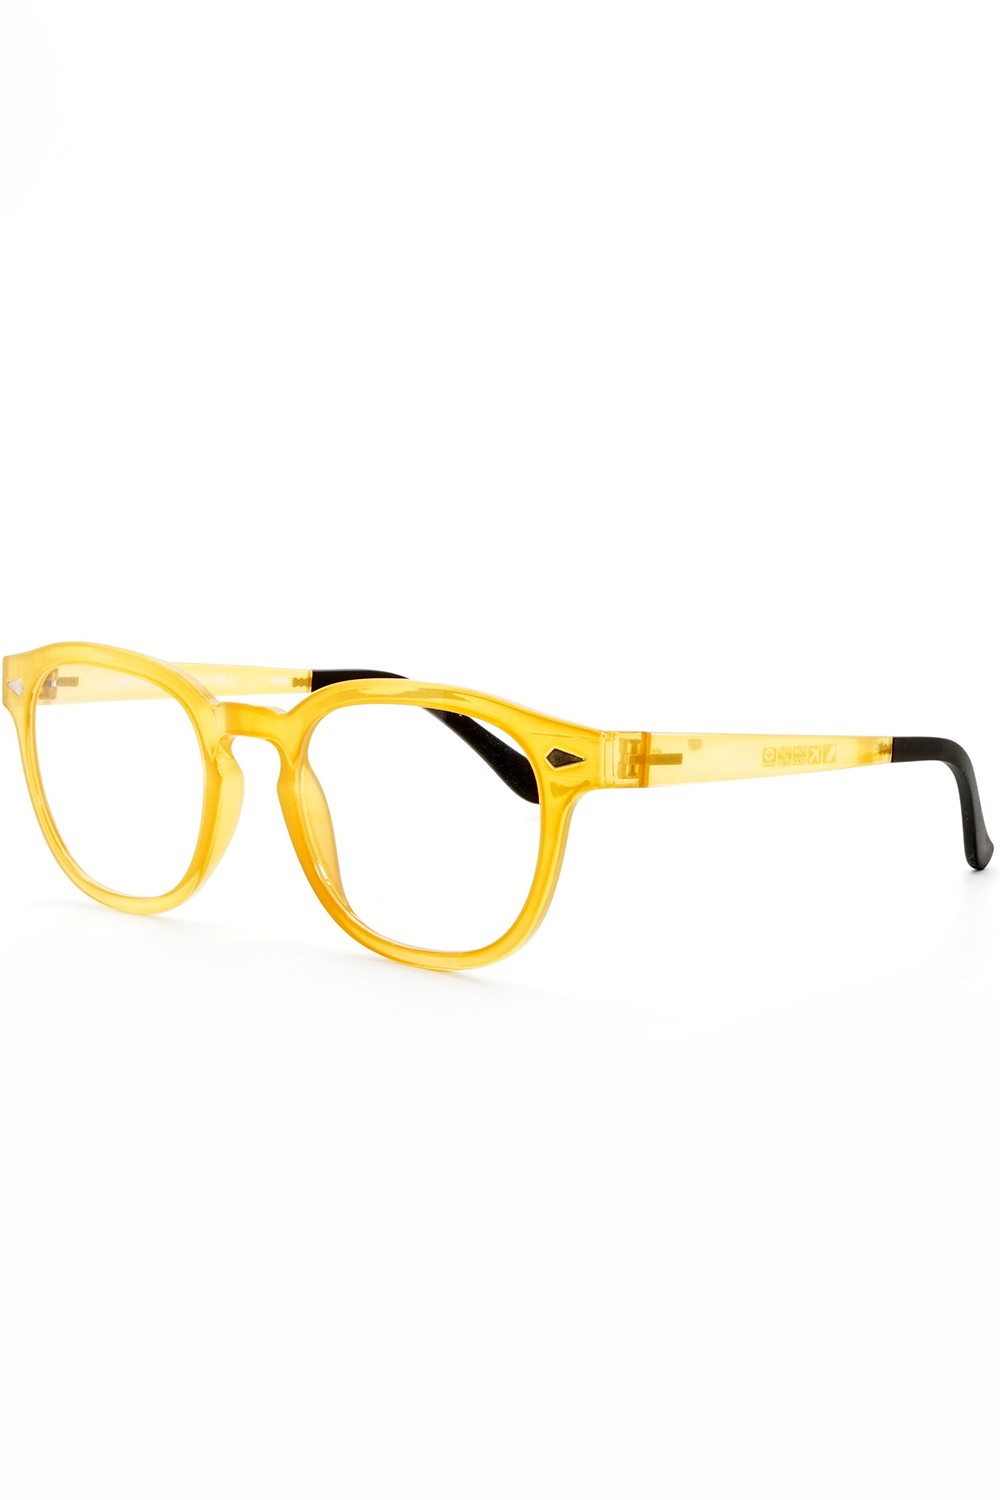 TF Occhiali - Occhiali da vista in plastica con clip solare tondi unisex giallo